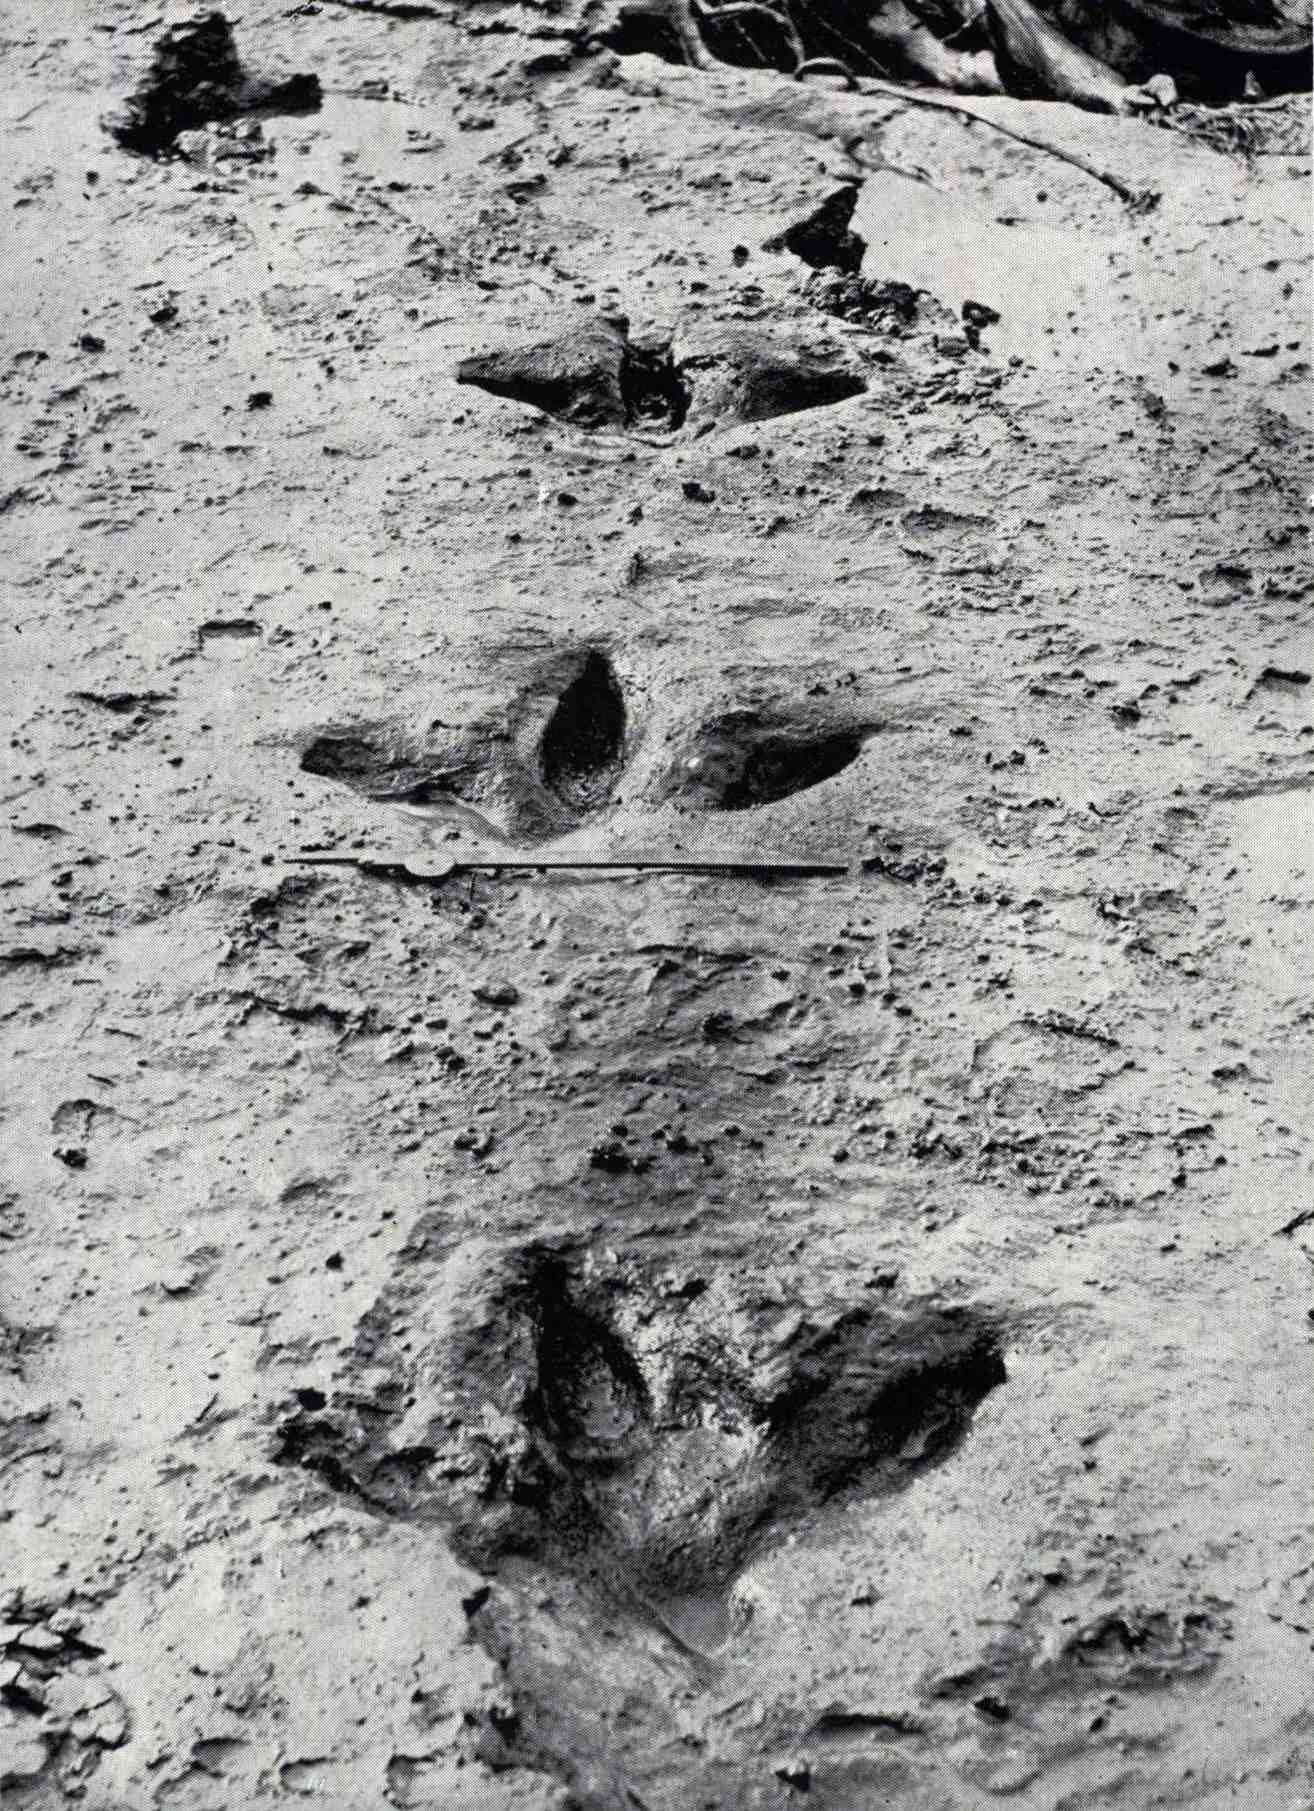 รอยเท้าของ Dinornis robustus เหล่านี้ถูกเปิดเผยในเดือนสิงหาคม ค.ศ. 1911 เมื่อน้ำท่วมในแม่น้ำ Manawatū กวาดล้างดินเหนียวสีน้ำเงินที่ปกคลุมและอนุรักษ์ไว้ พวกเขาแสดงให้เห็นว่าโมอานั้นมีนิ้วเท้าชี้ที่แข็งแรงสามนิ้วและแตกต่างจาก ratites อื่น ๆ ส่วนใหญ่คือนิ้วเท้าหลังขนาดเล็ก